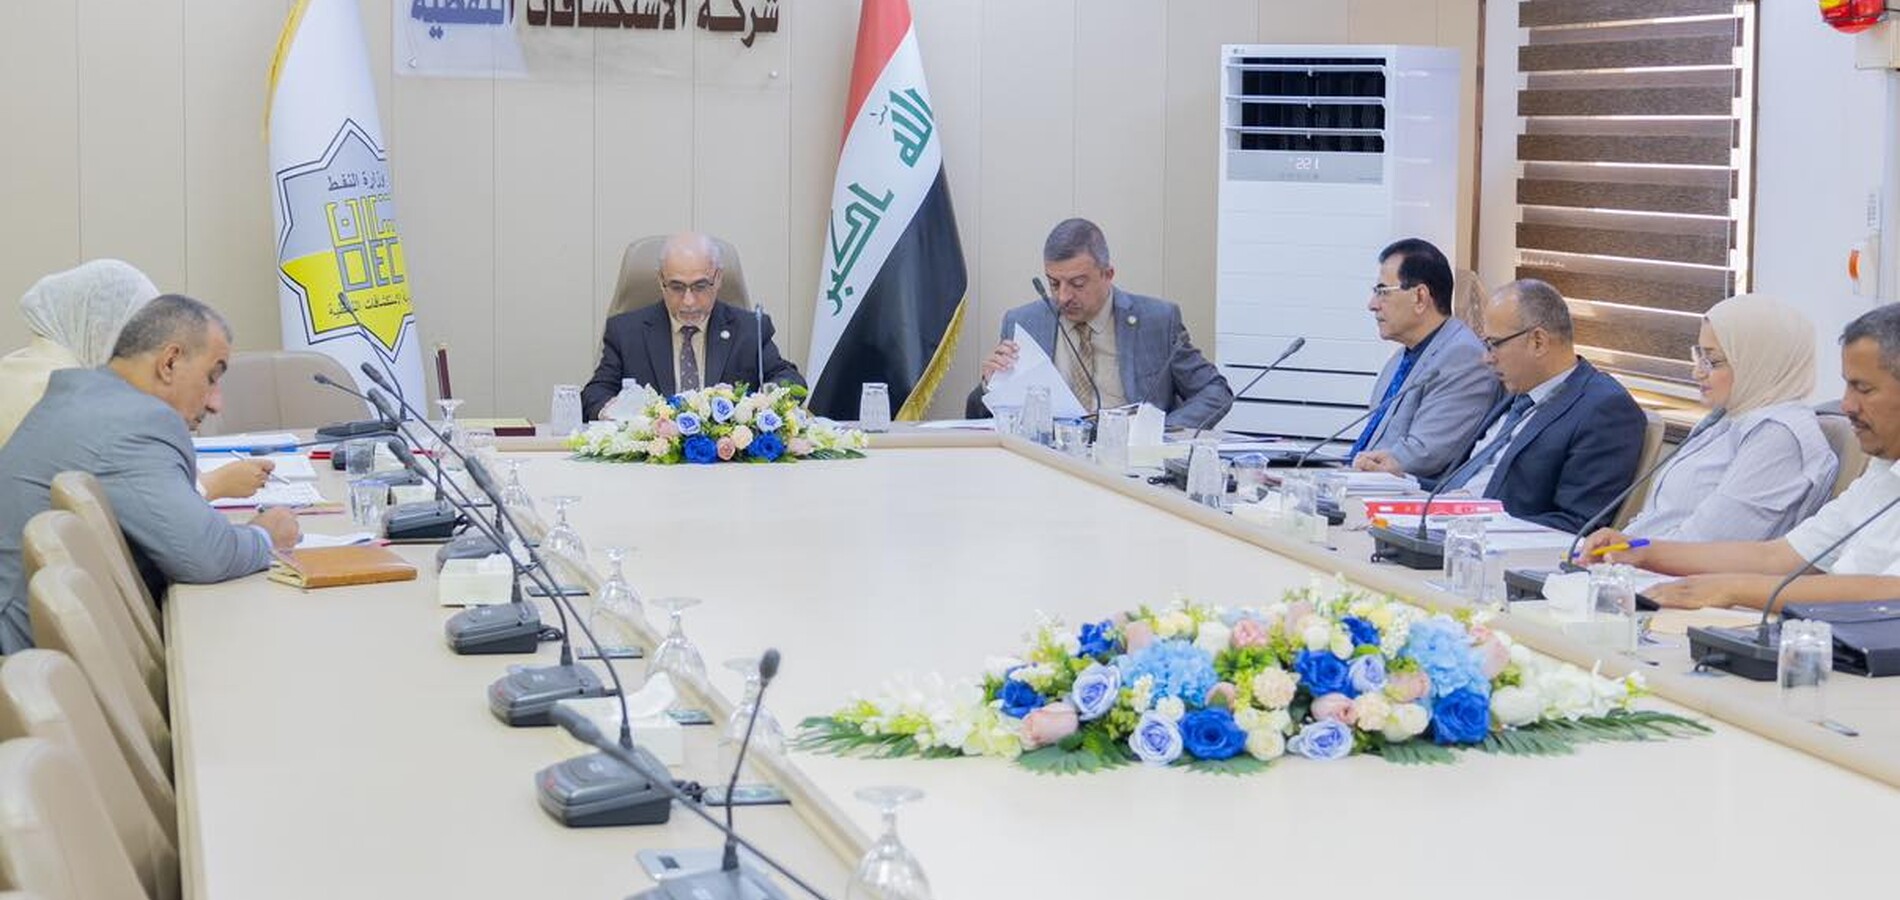 مجلس إدارة شركة الاستكشافات النفطية يعقد جلسته السادسة برئاسة الدكتور أسامة رؤوف حسين